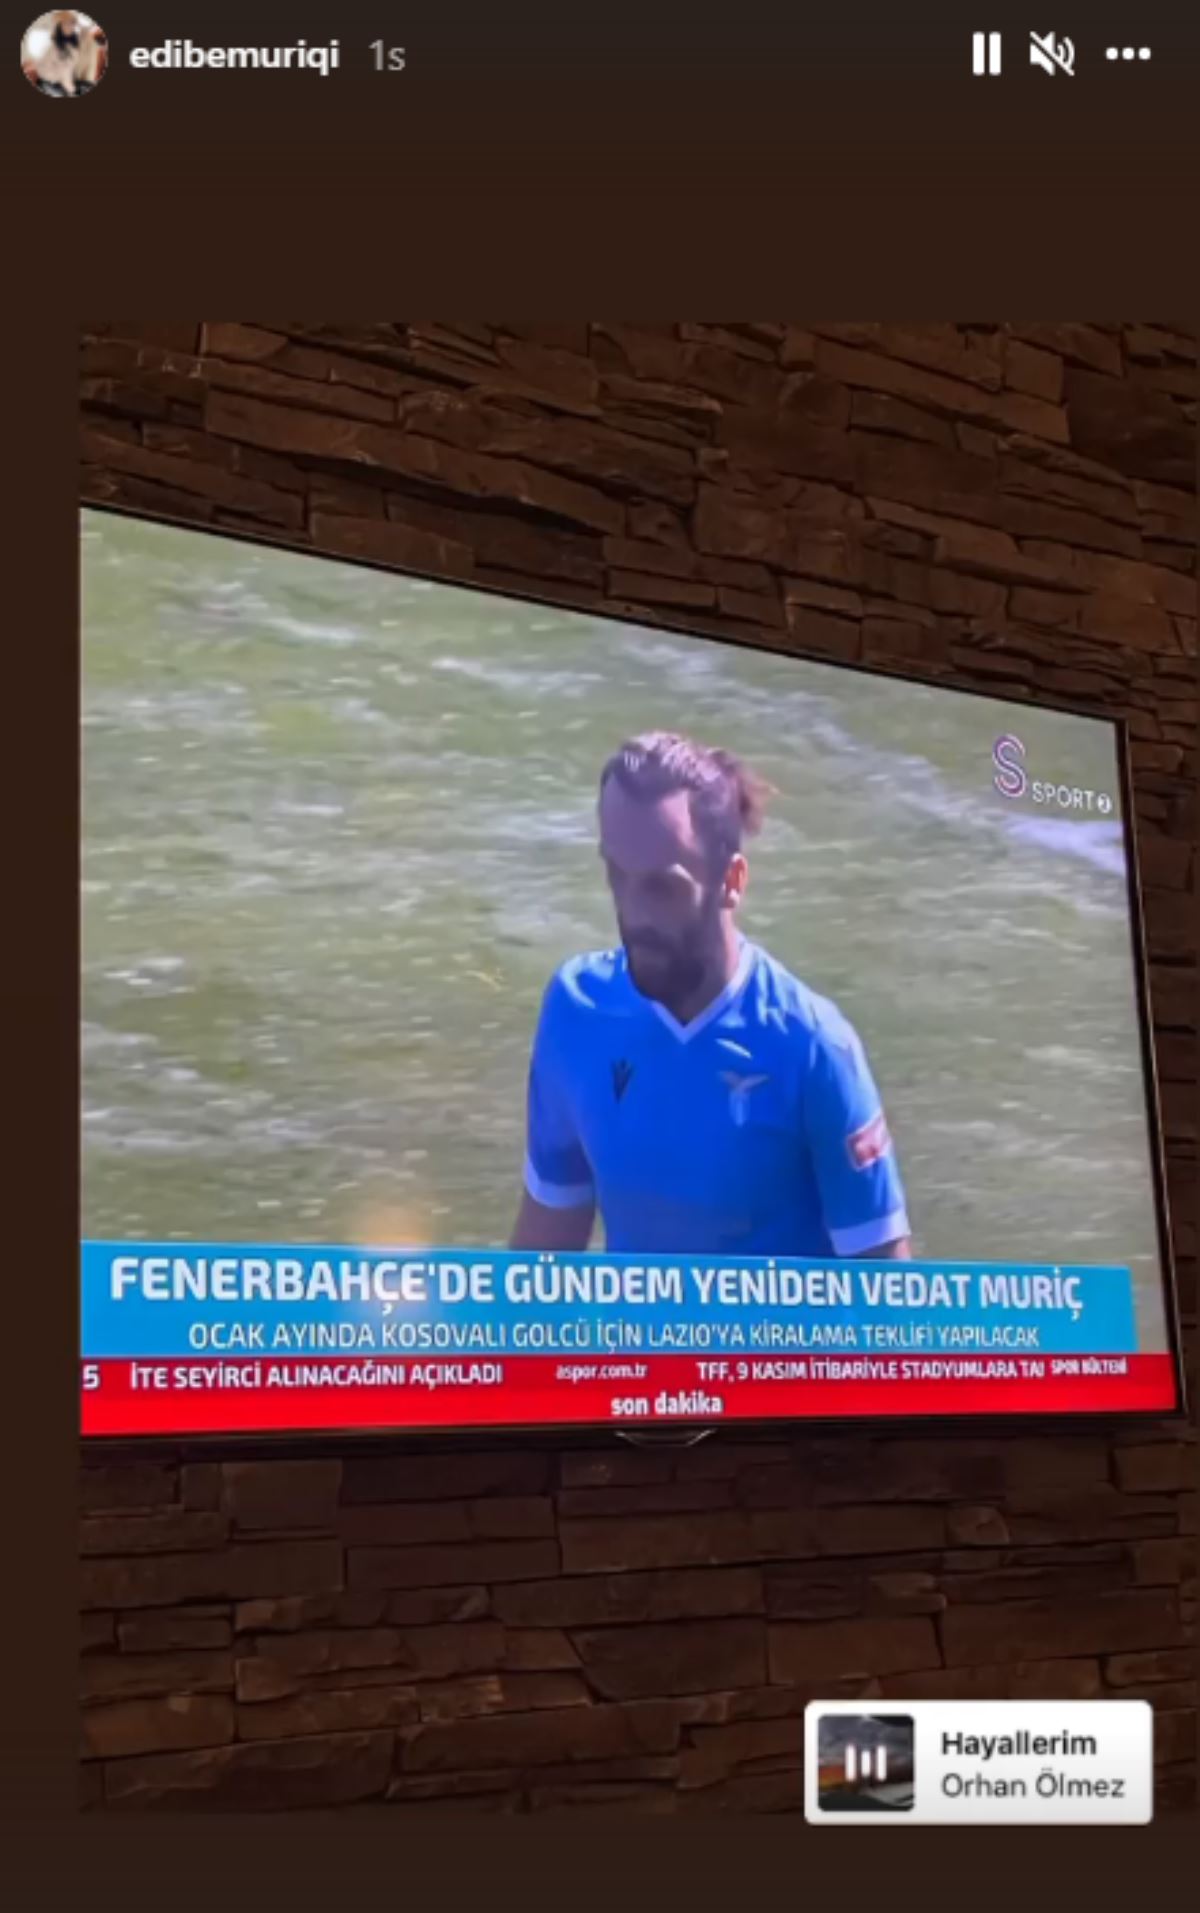 Vedat Muriqi'nin eşi sosyal medyadan Fenerbahçe paylaşımında bulundu